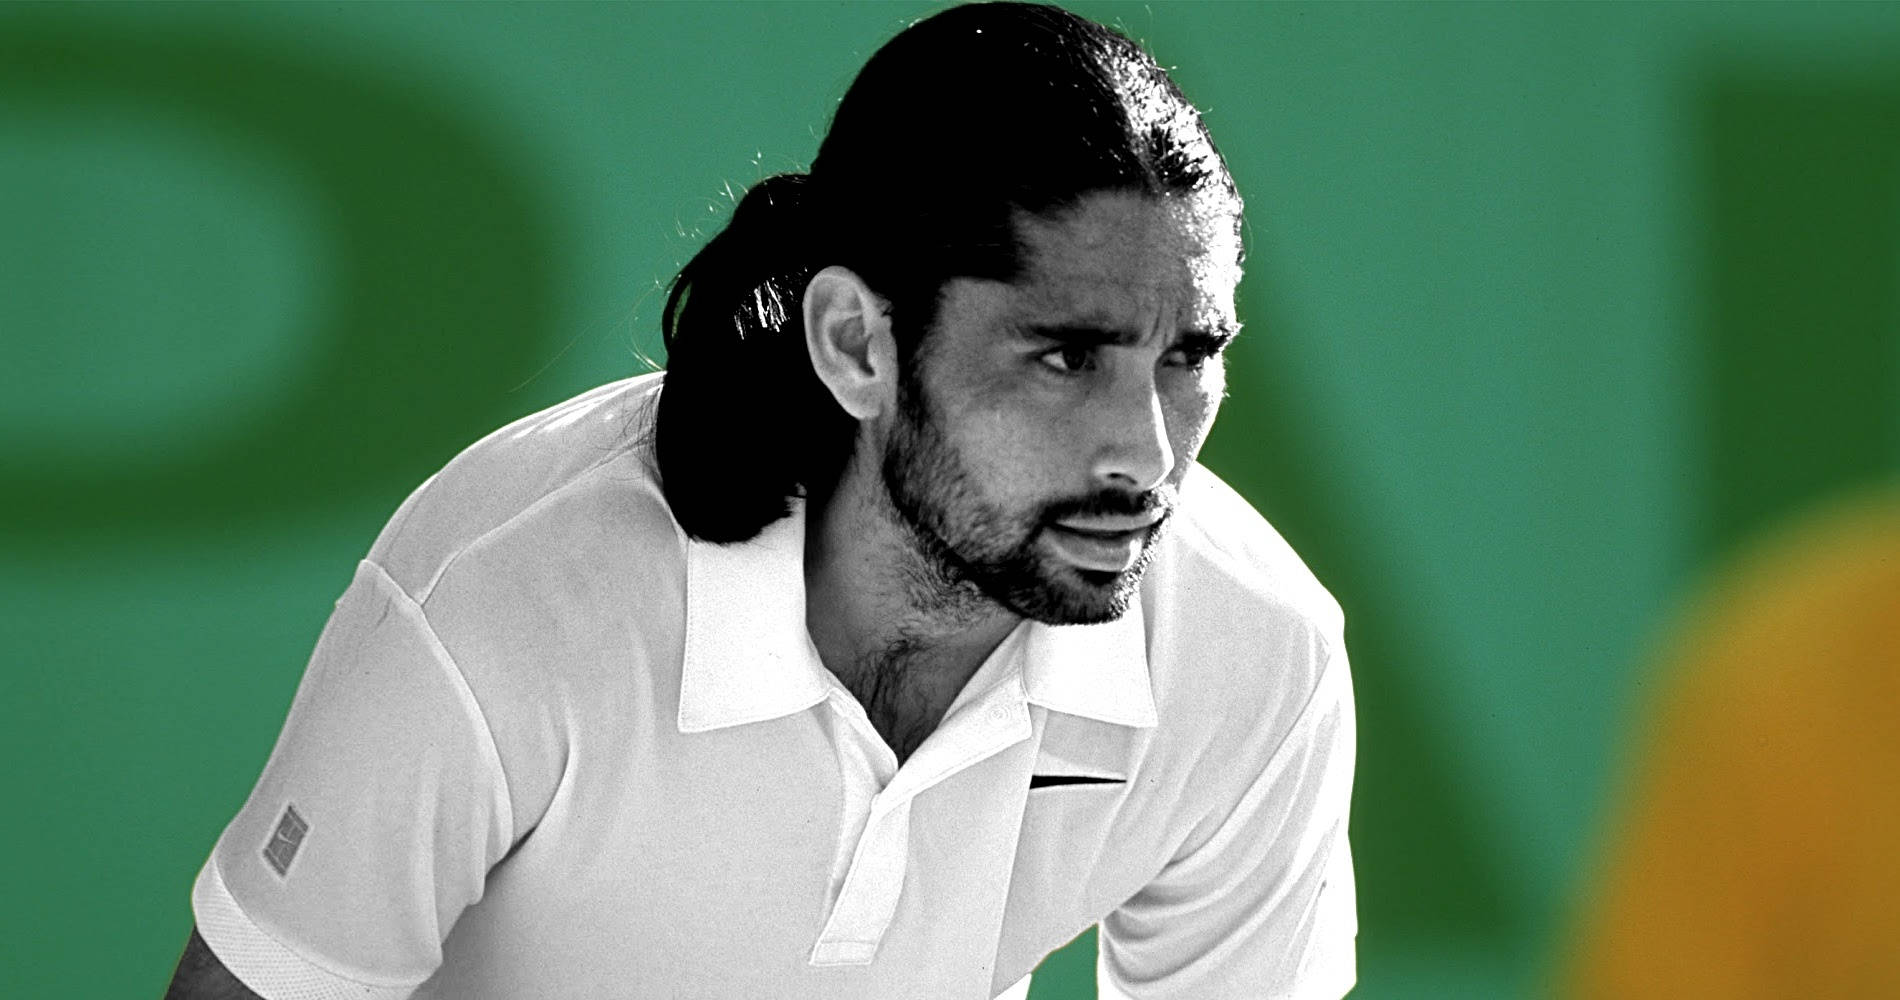 Tennis Legend Marcelo Rios in Grayscale Wallpaper